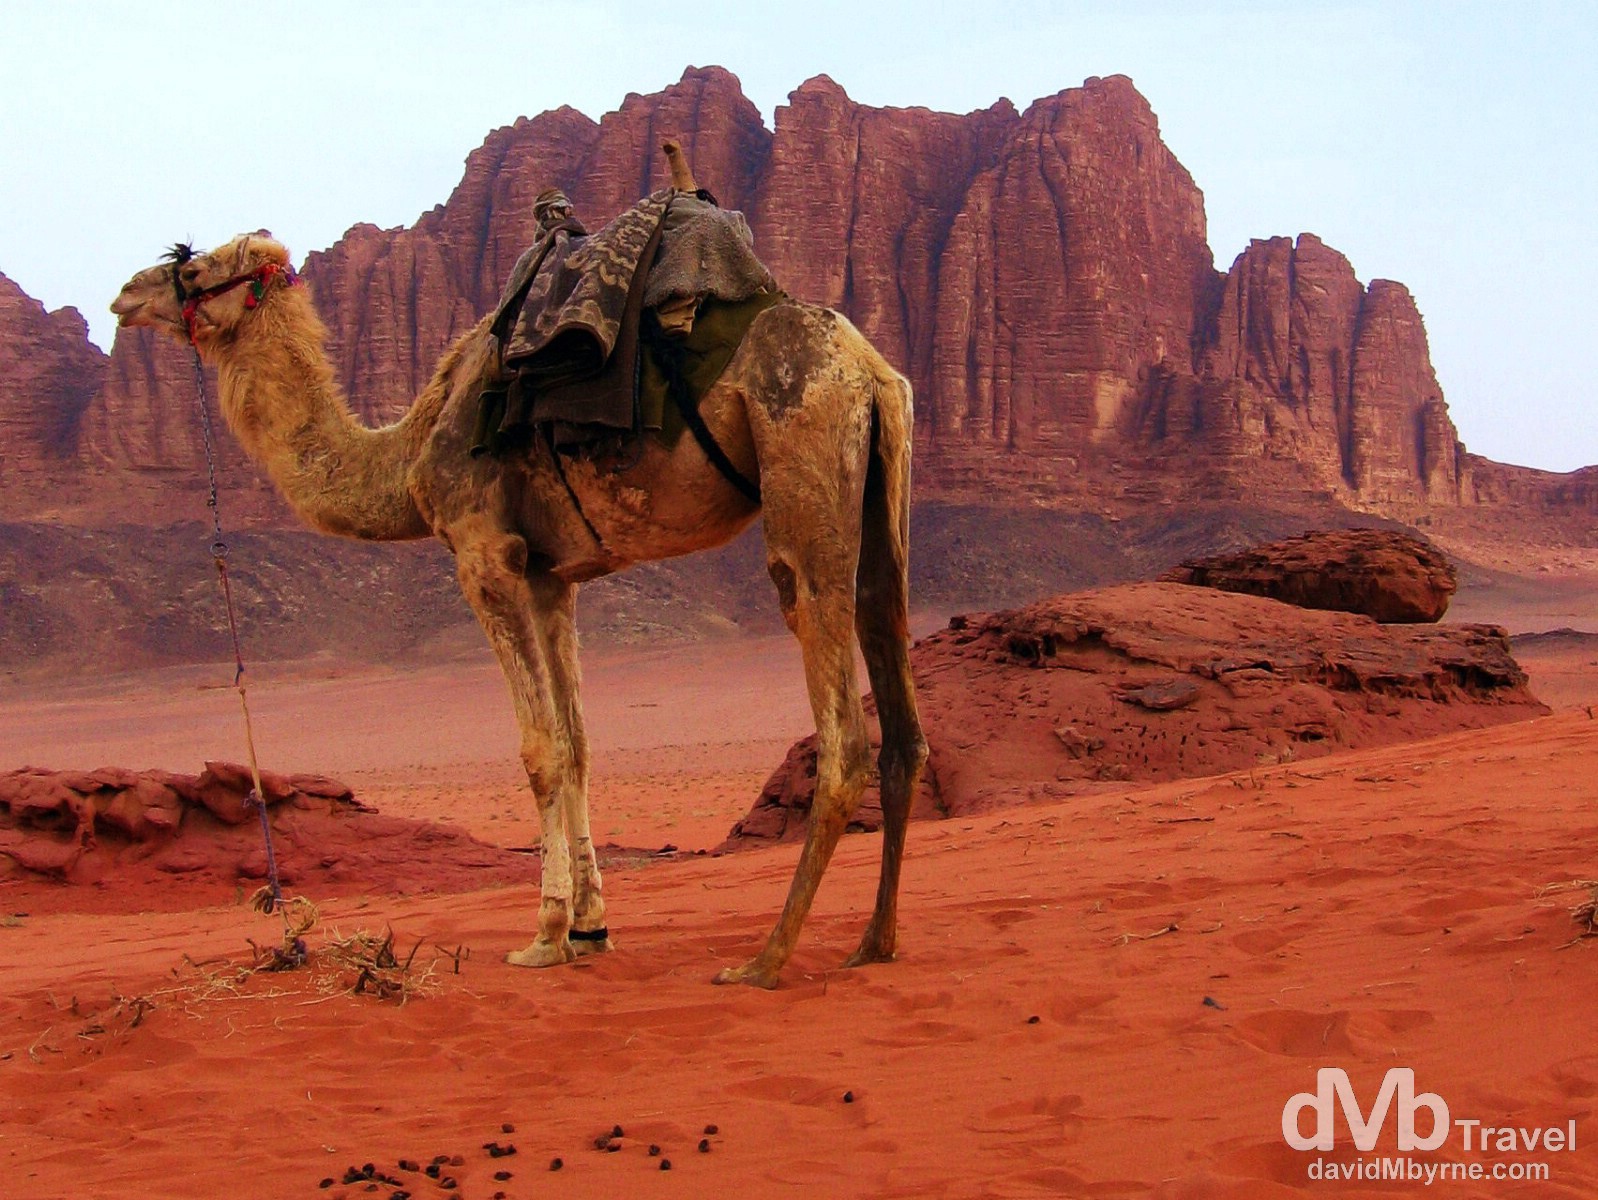 A camel in the red sands of Wadi Rum, Jordan. April 26, 2008.